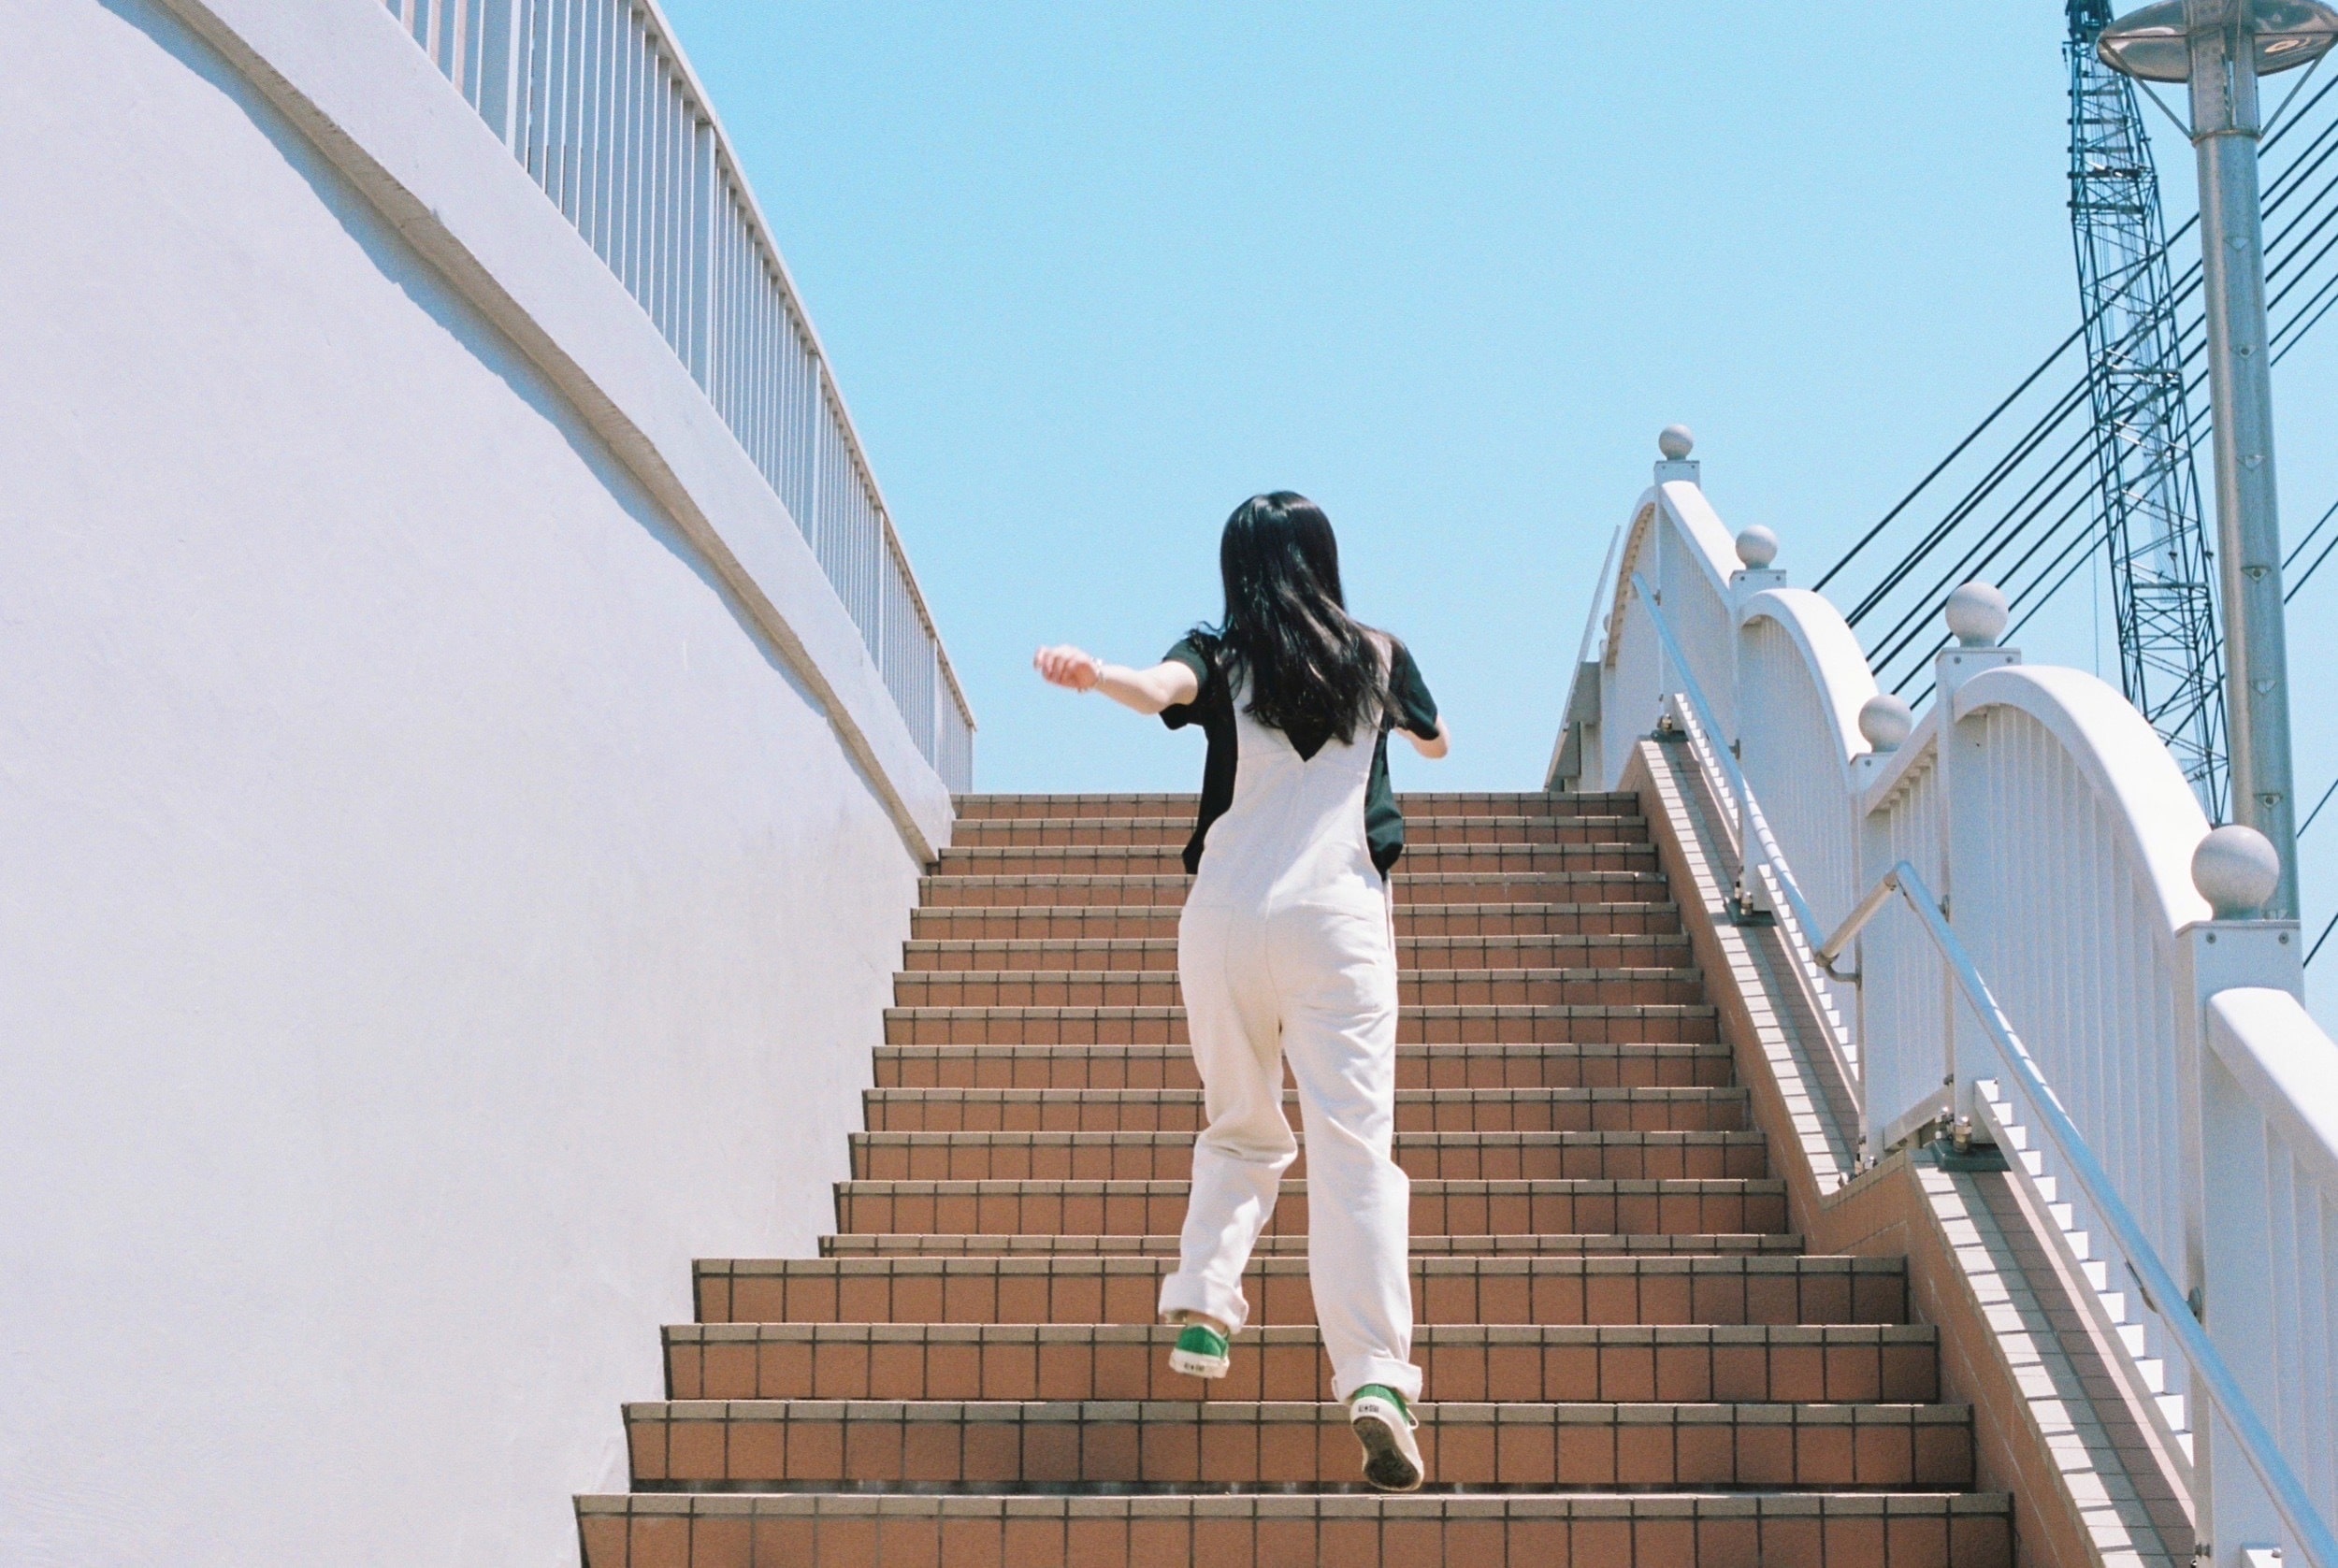 羽賀さん撮影による階段を駆け上る譜久村さんの後ろ姿の写真